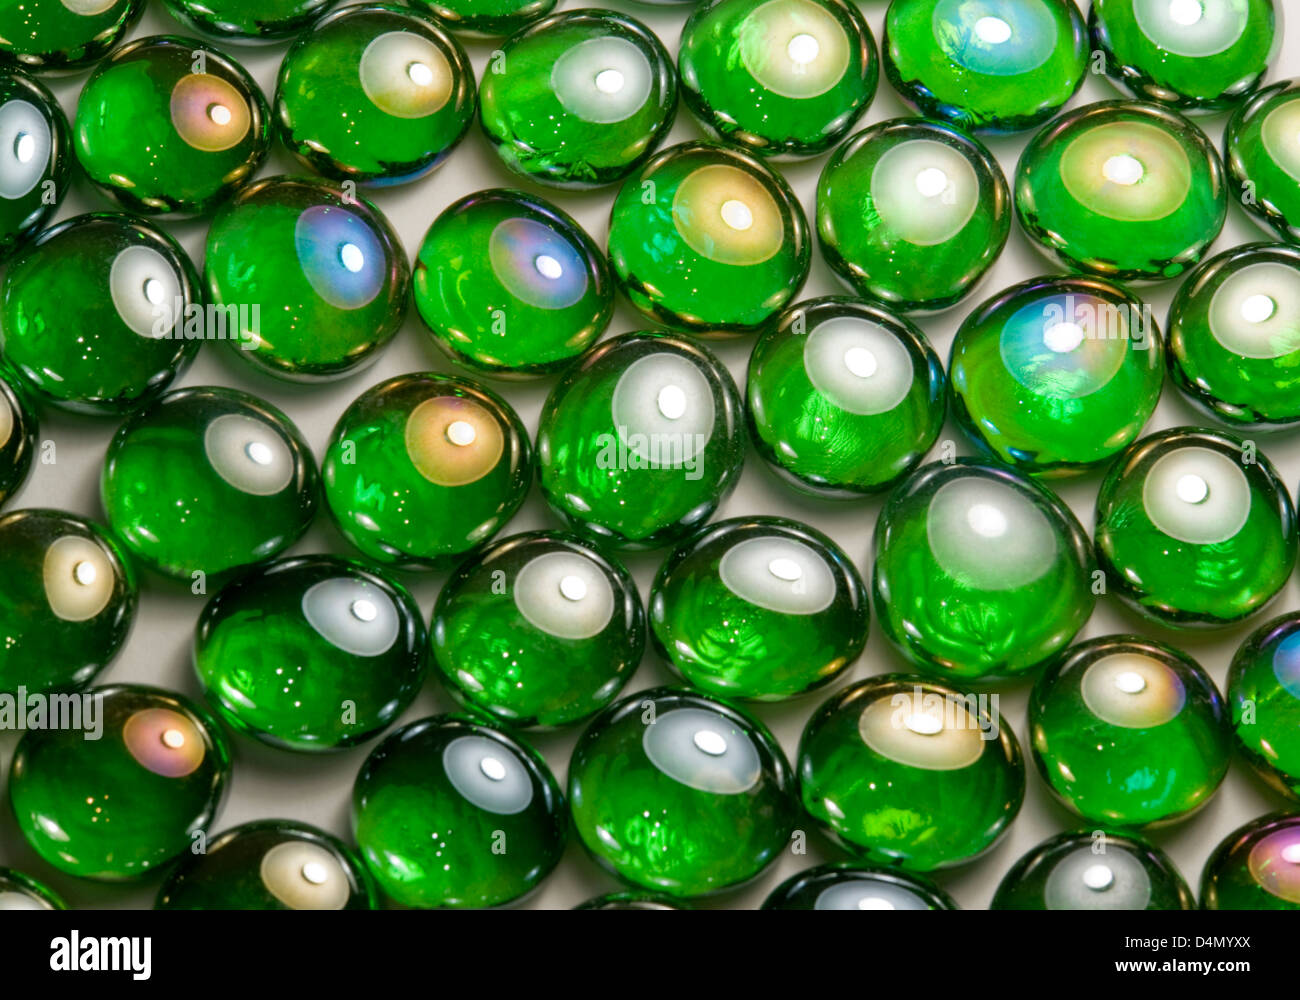 Résumé fond plein cadre photo avec perles de verre vert irisé dans le dos de lumière Banque D'Images